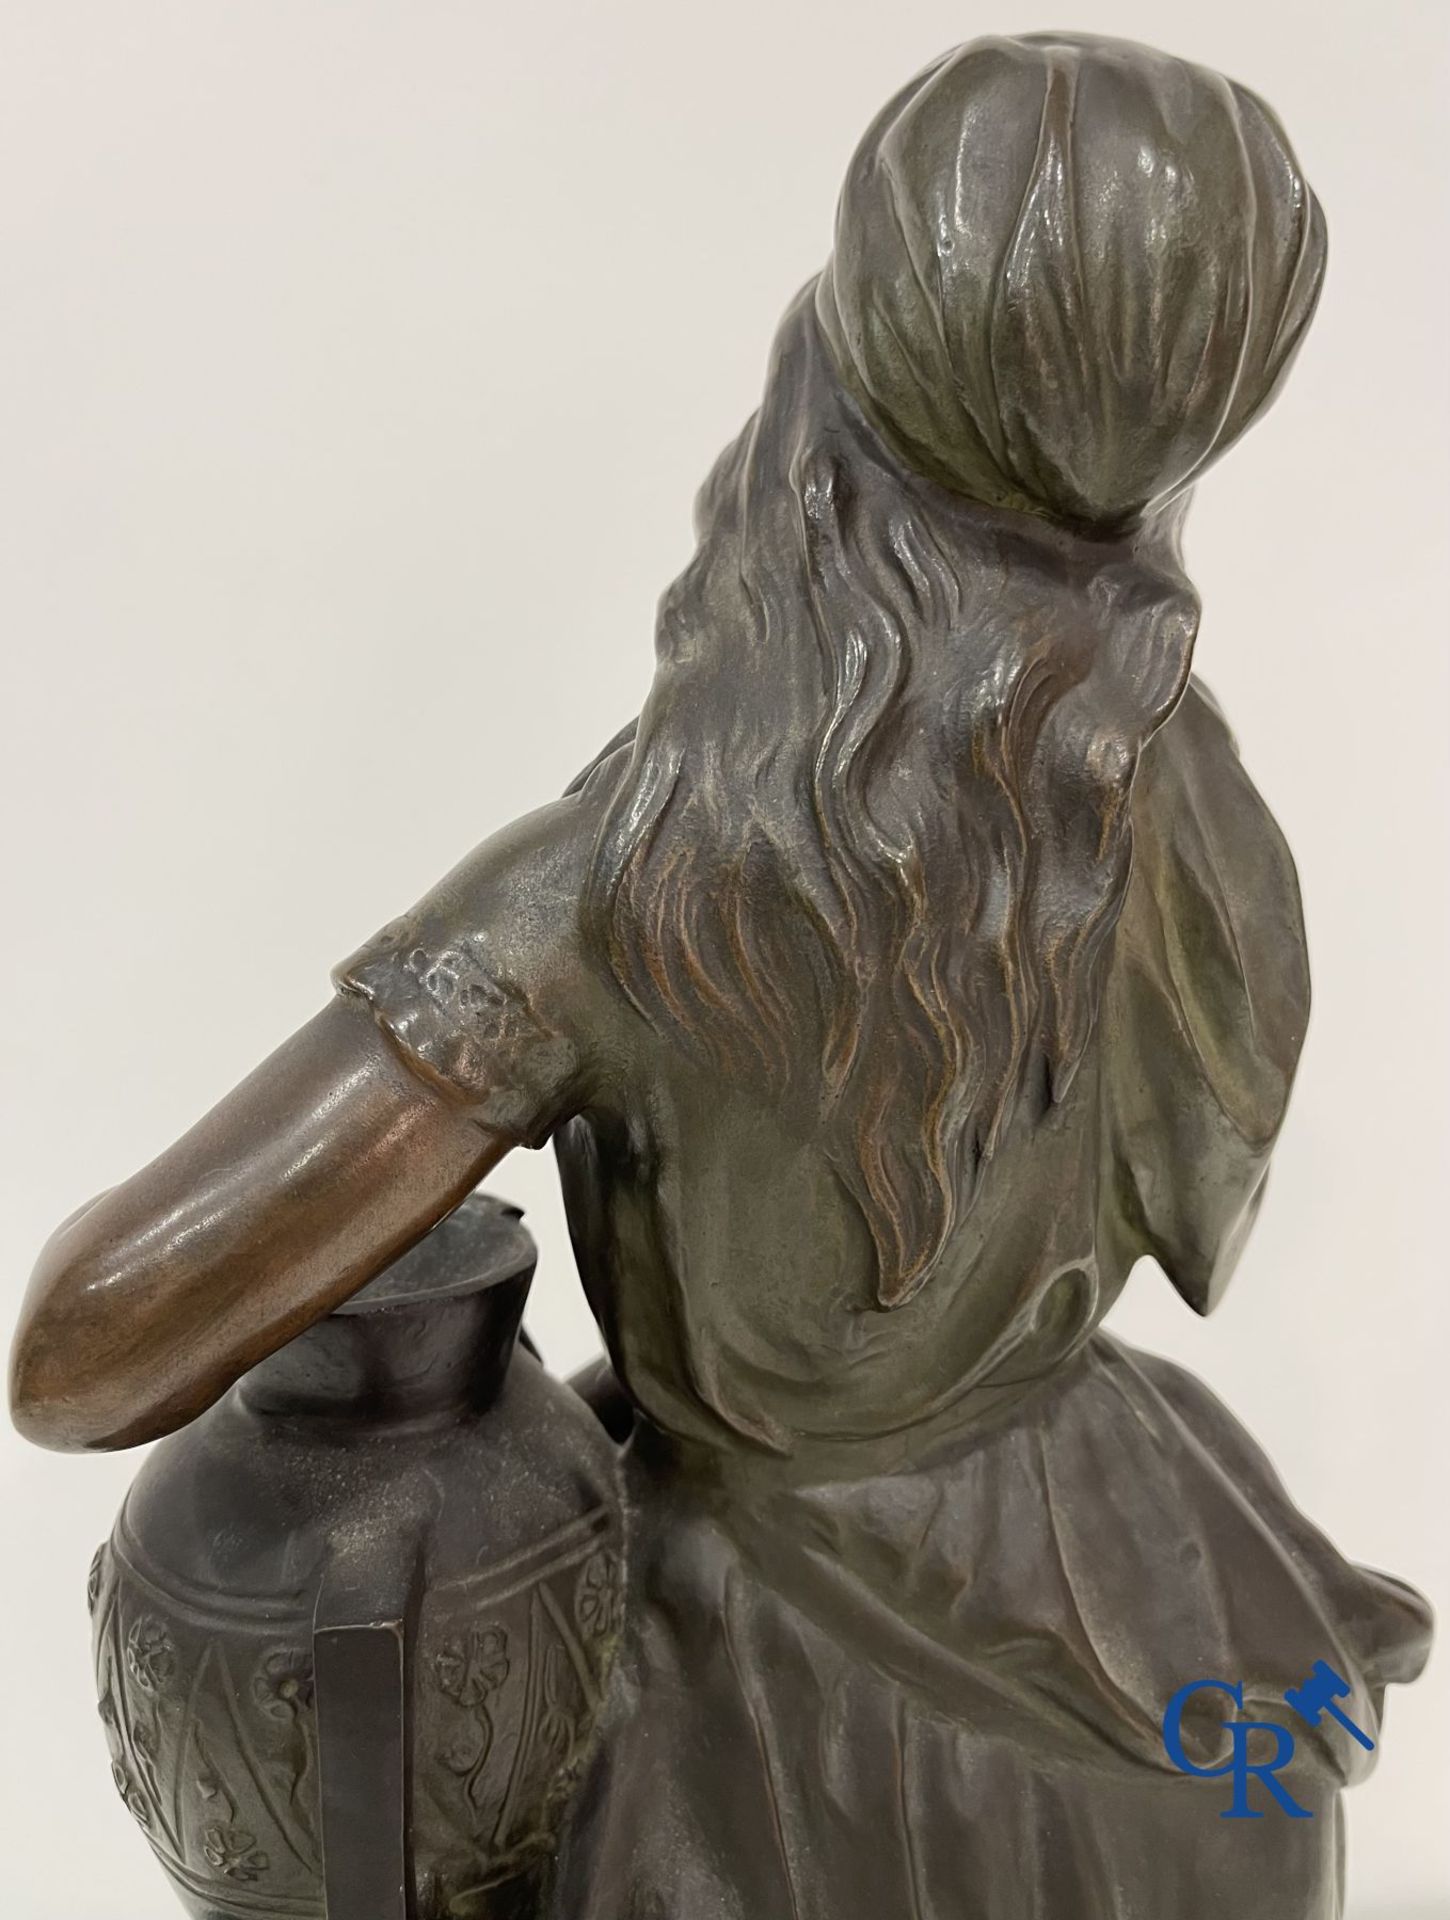 Edmond Lefever: (Ypres 1839-Schaarbeek 1911) "Rebecca" oriental bronze statue. - Image 14 of 16